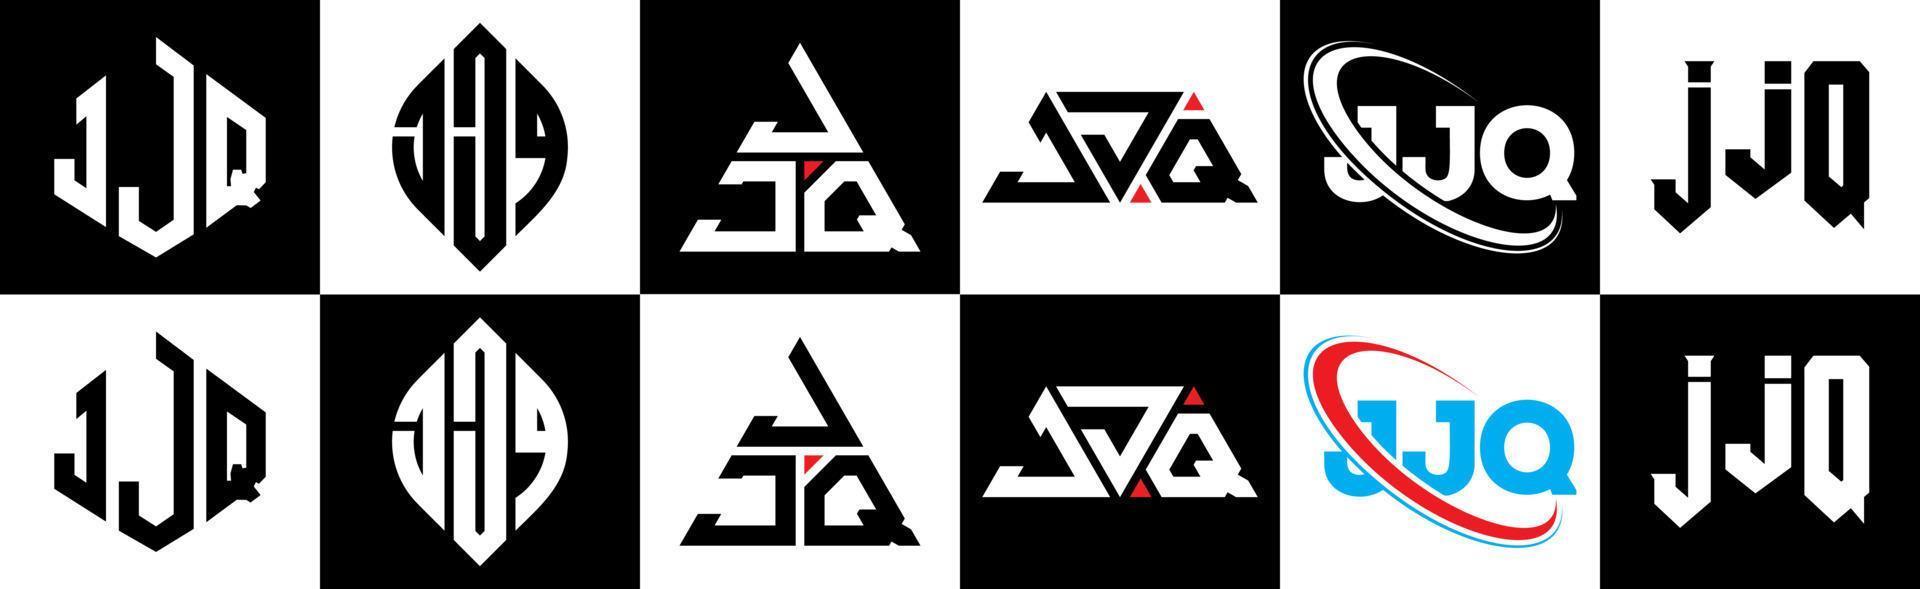 jjq brief logo ontwerp in zes stijl. jjq veelhoek, cirkel, driehoek, zeshoek, vlak en gemakkelijk stijl met zwart en wit kleur variatie brief logo reeks in een tekengebied. jjq minimalistische en klassiek logo vector